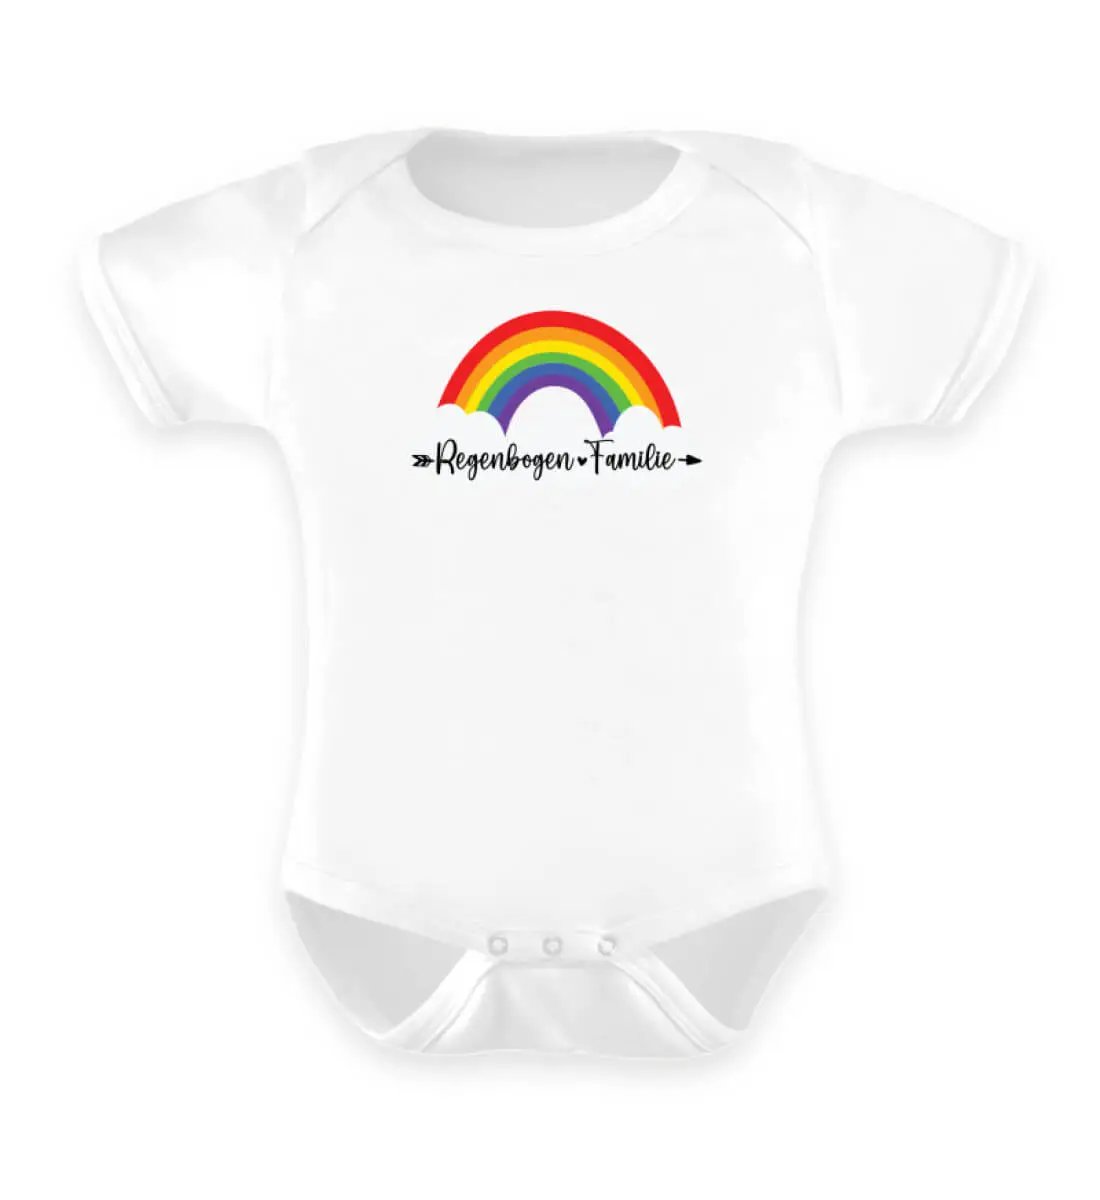 Dieses Bild zeigt einen weißen Baby Body mit einem Regenbogen wo drauf steht Regenbogen-Familie